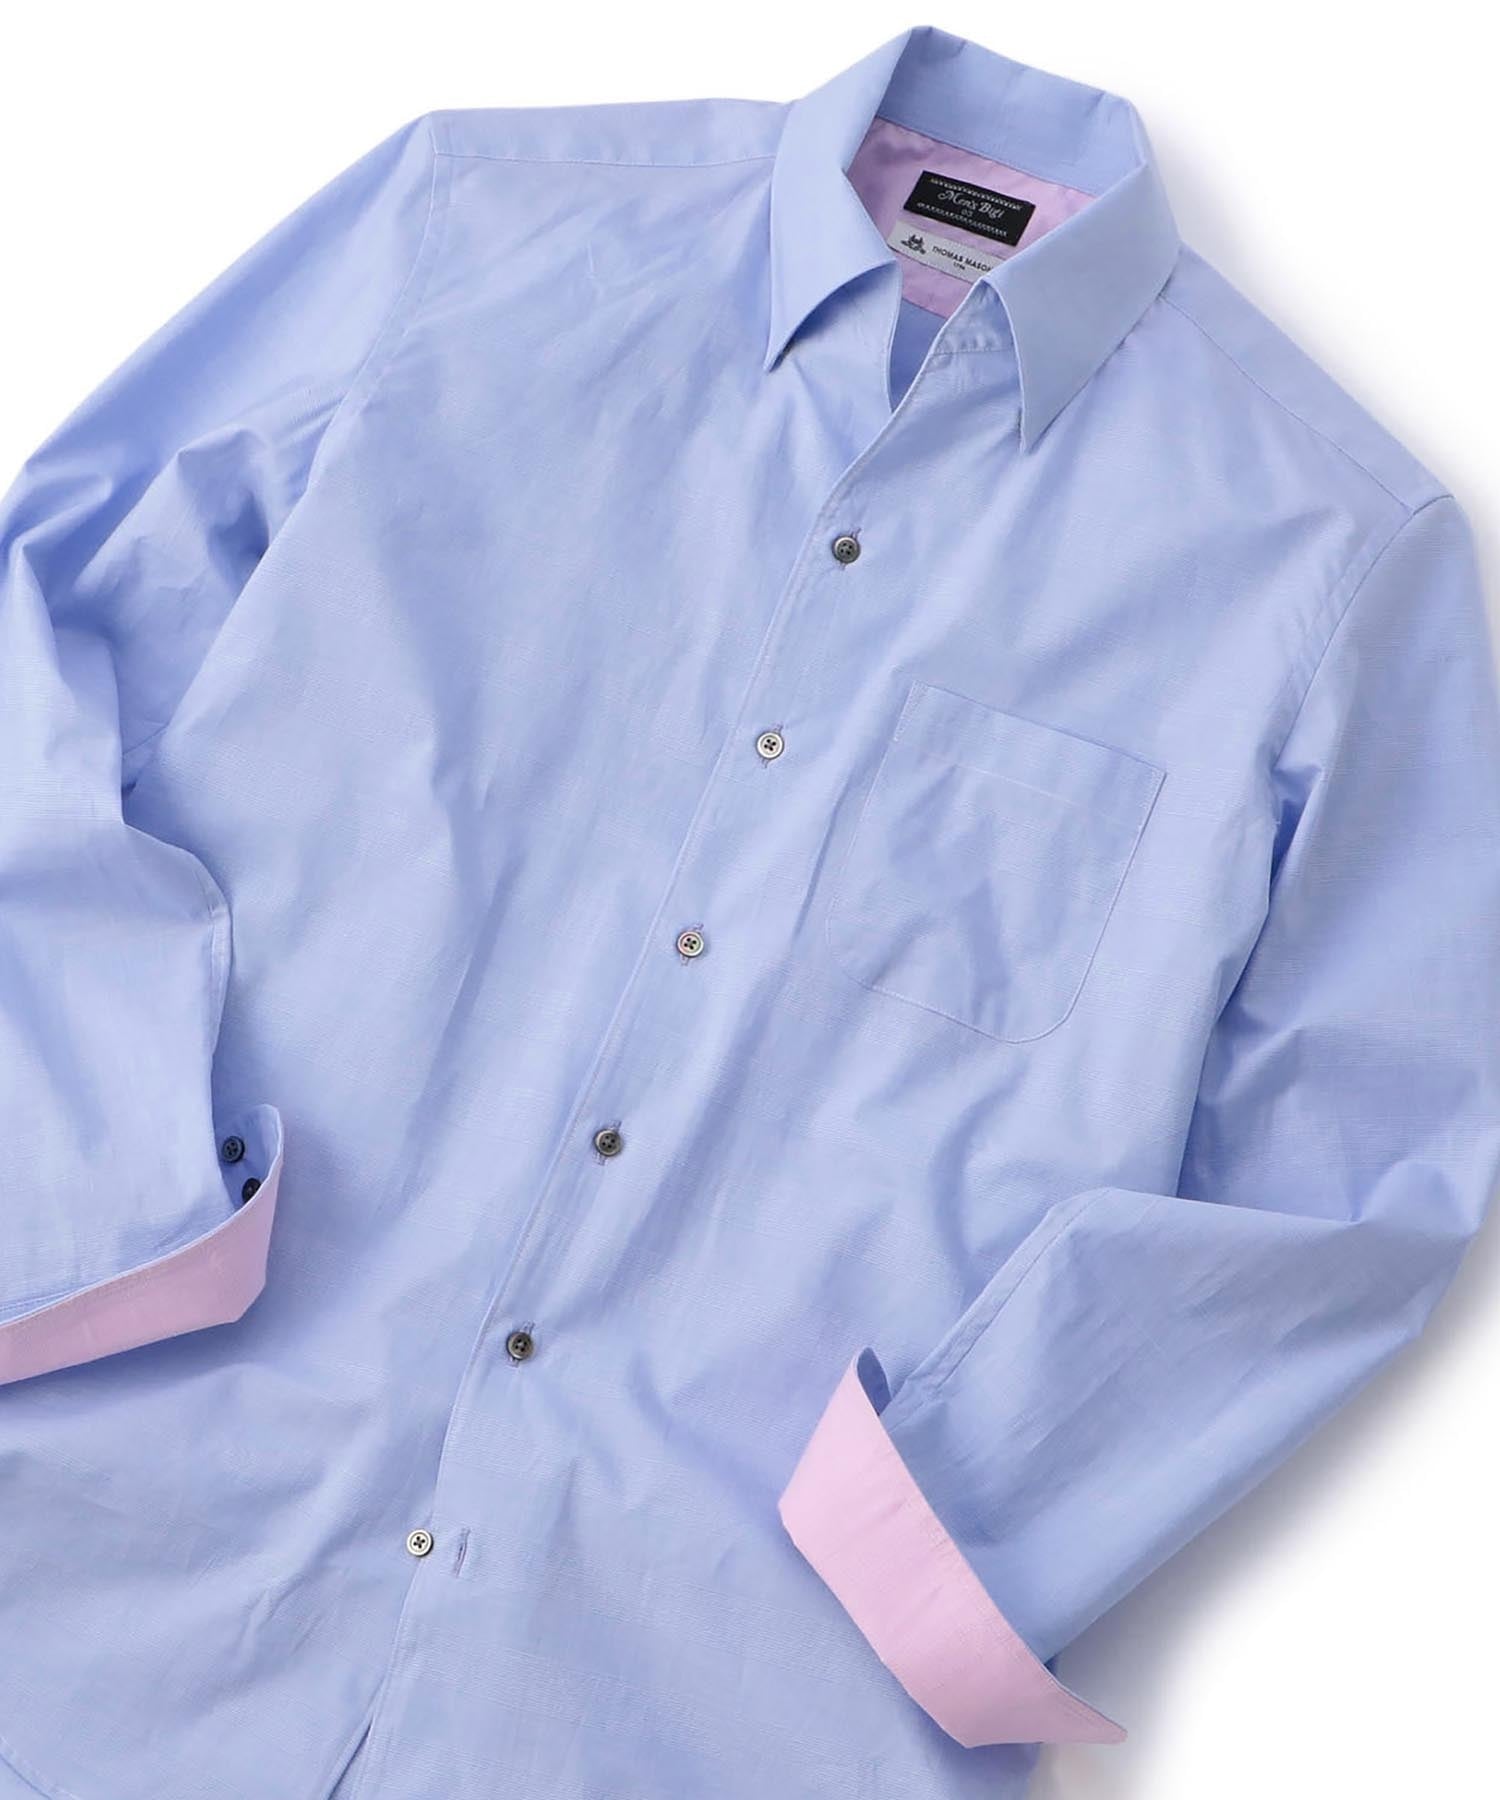 ウォッシャブル Thomas Mason グレンチェックシャツ メンズファッション通販 Men S Bigi Online Store メンズビギ オンラインストア